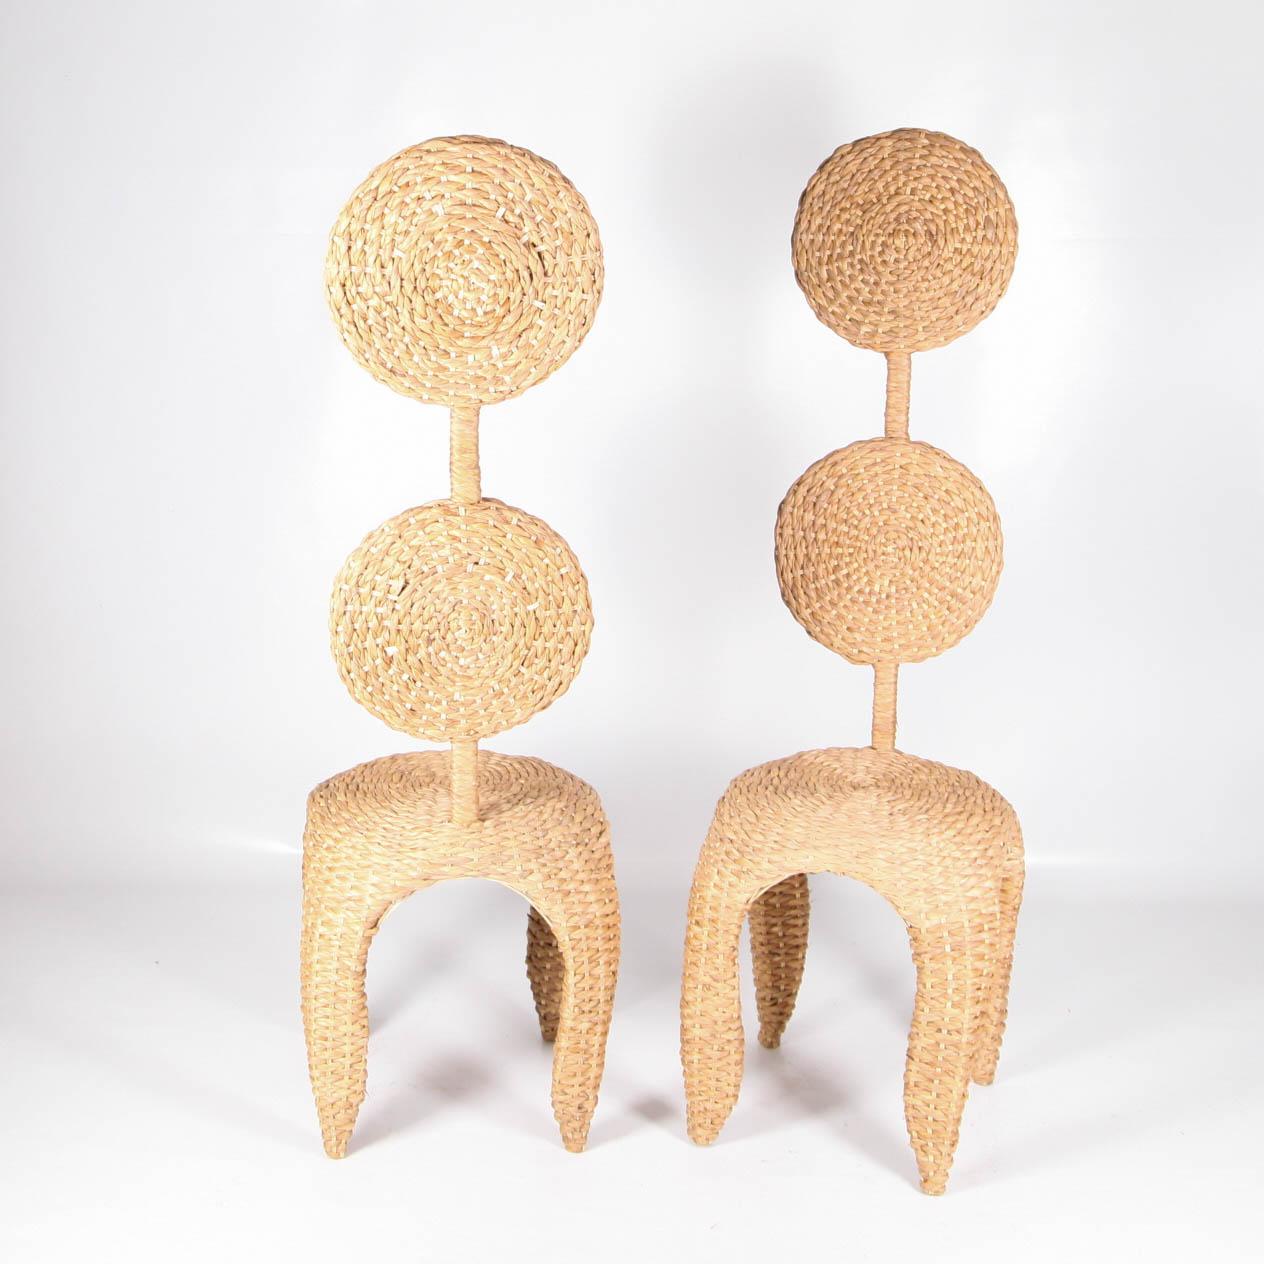 European Pair of Sculptural Chairs in Braided Natural Fiber